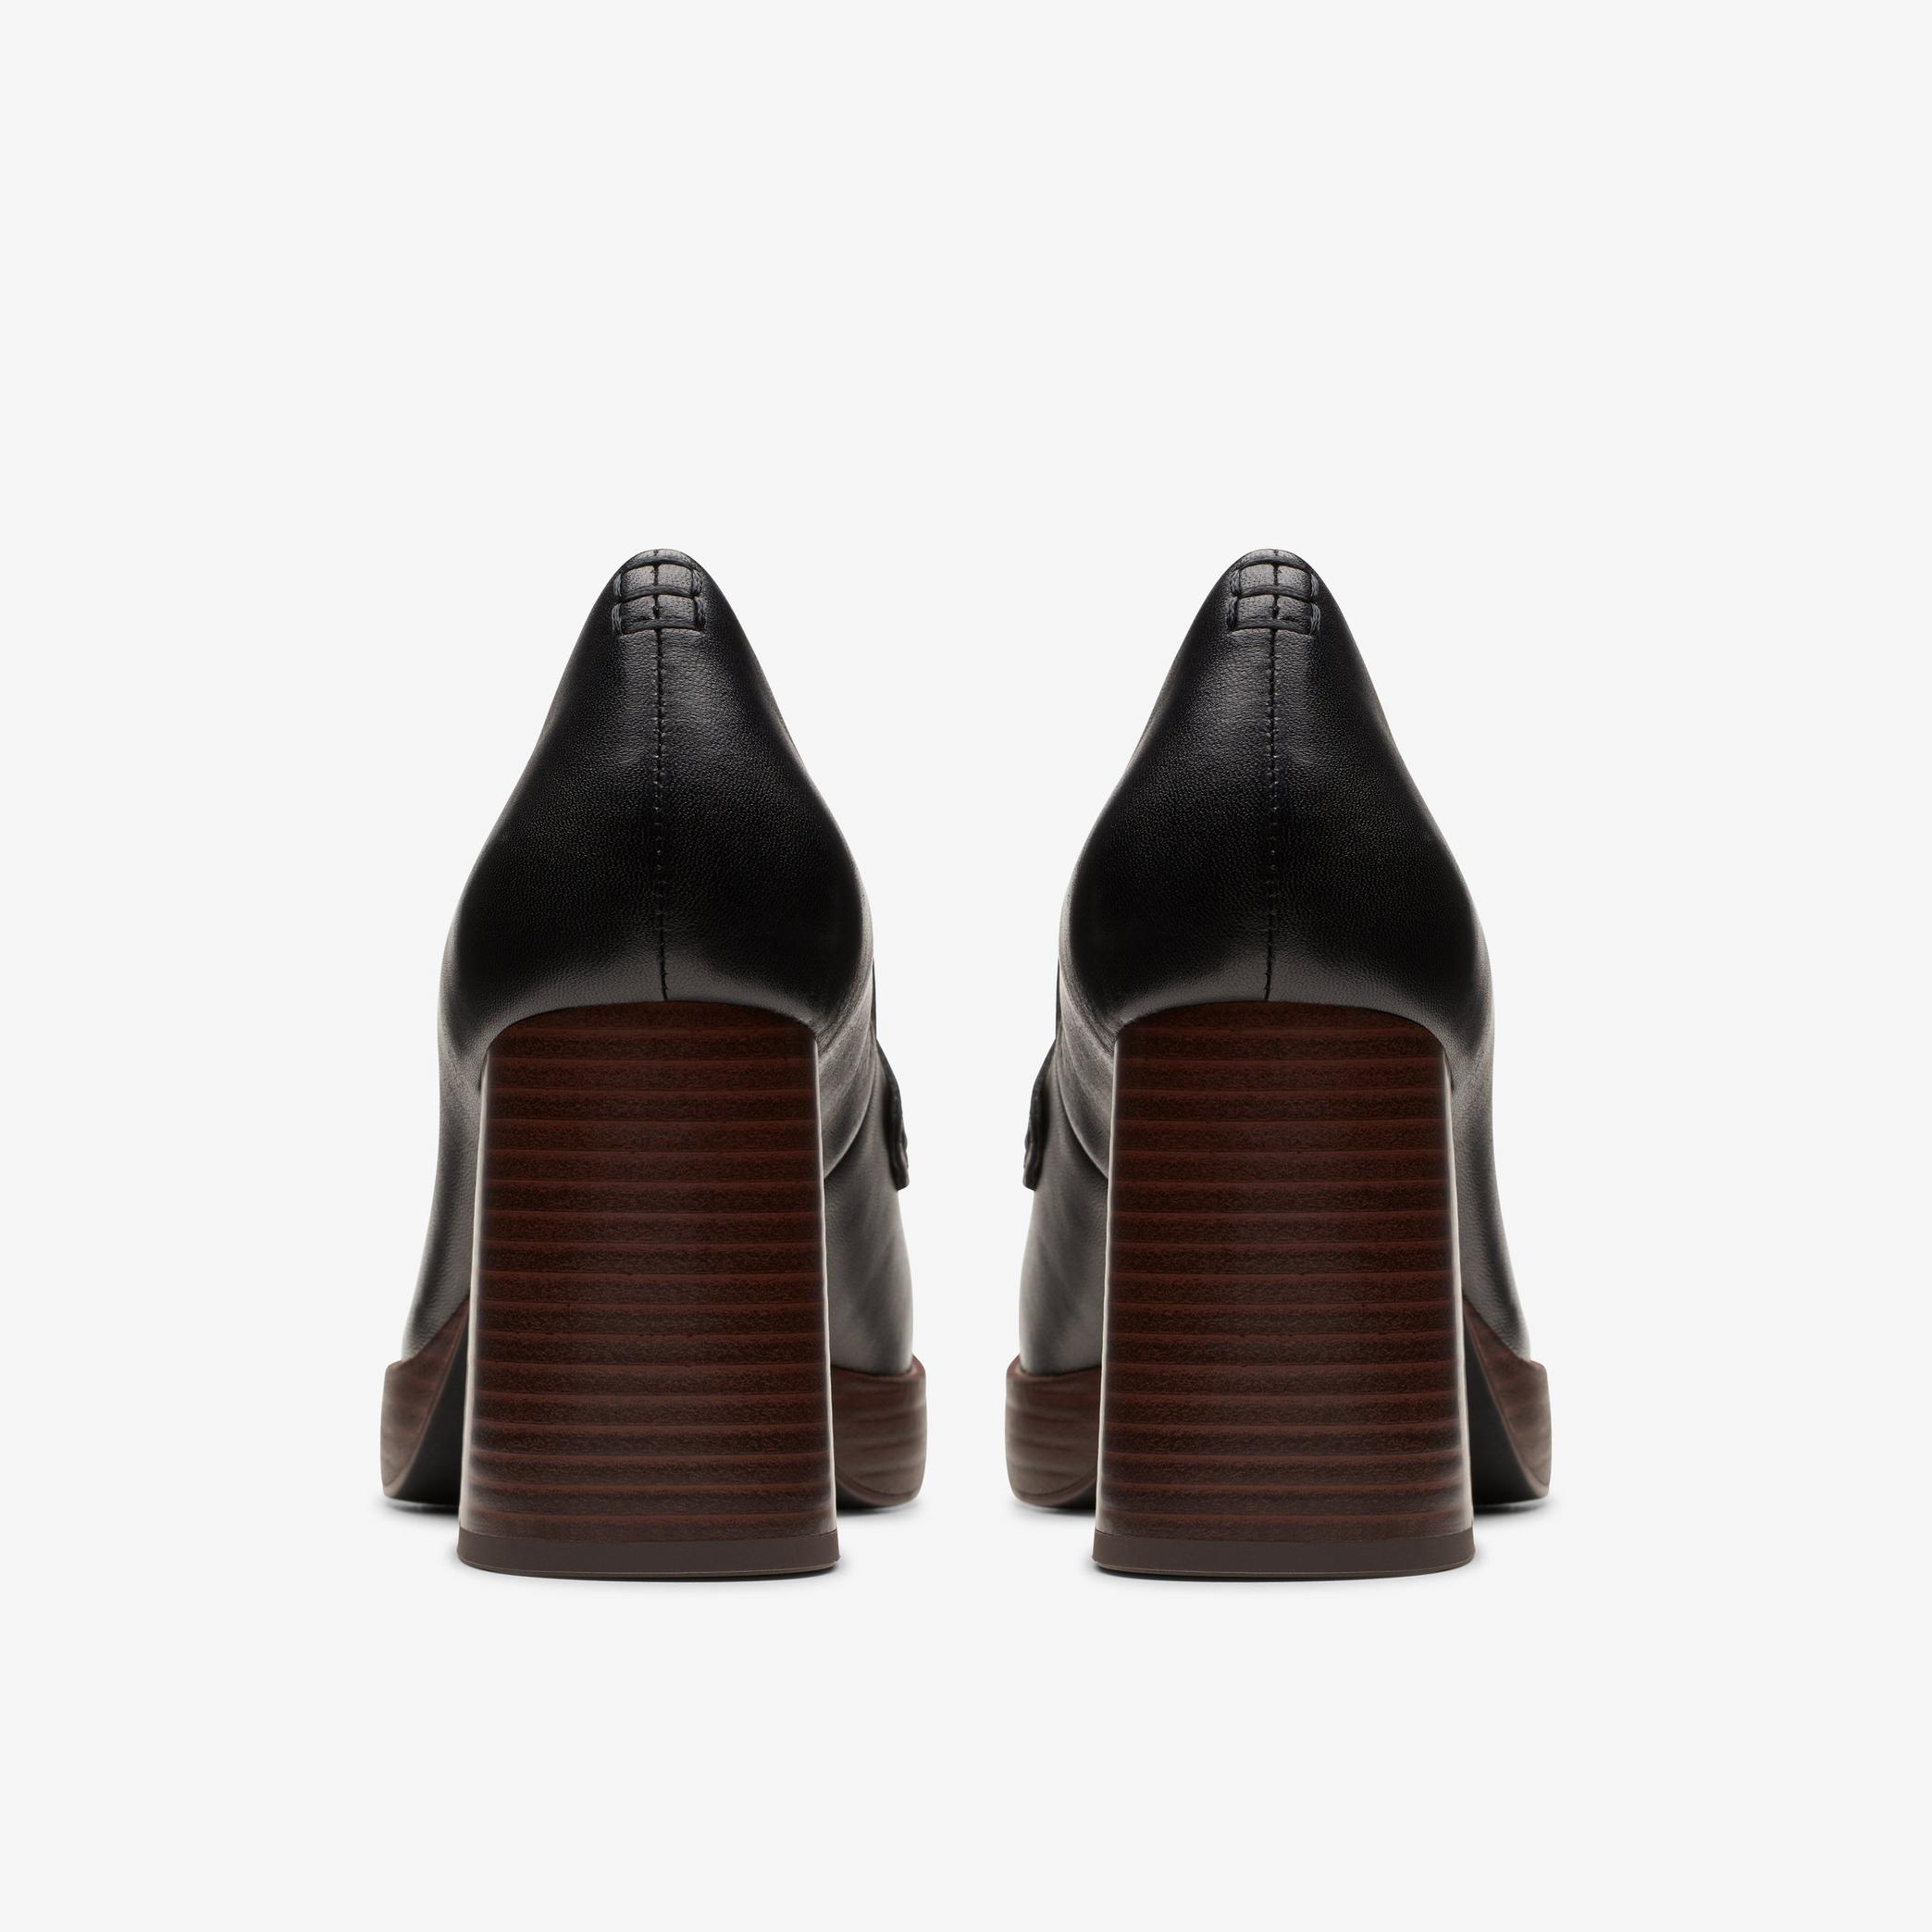 Chaussures à talons hauts en cuir noir Zoya85 Walk, vue 5 de 6